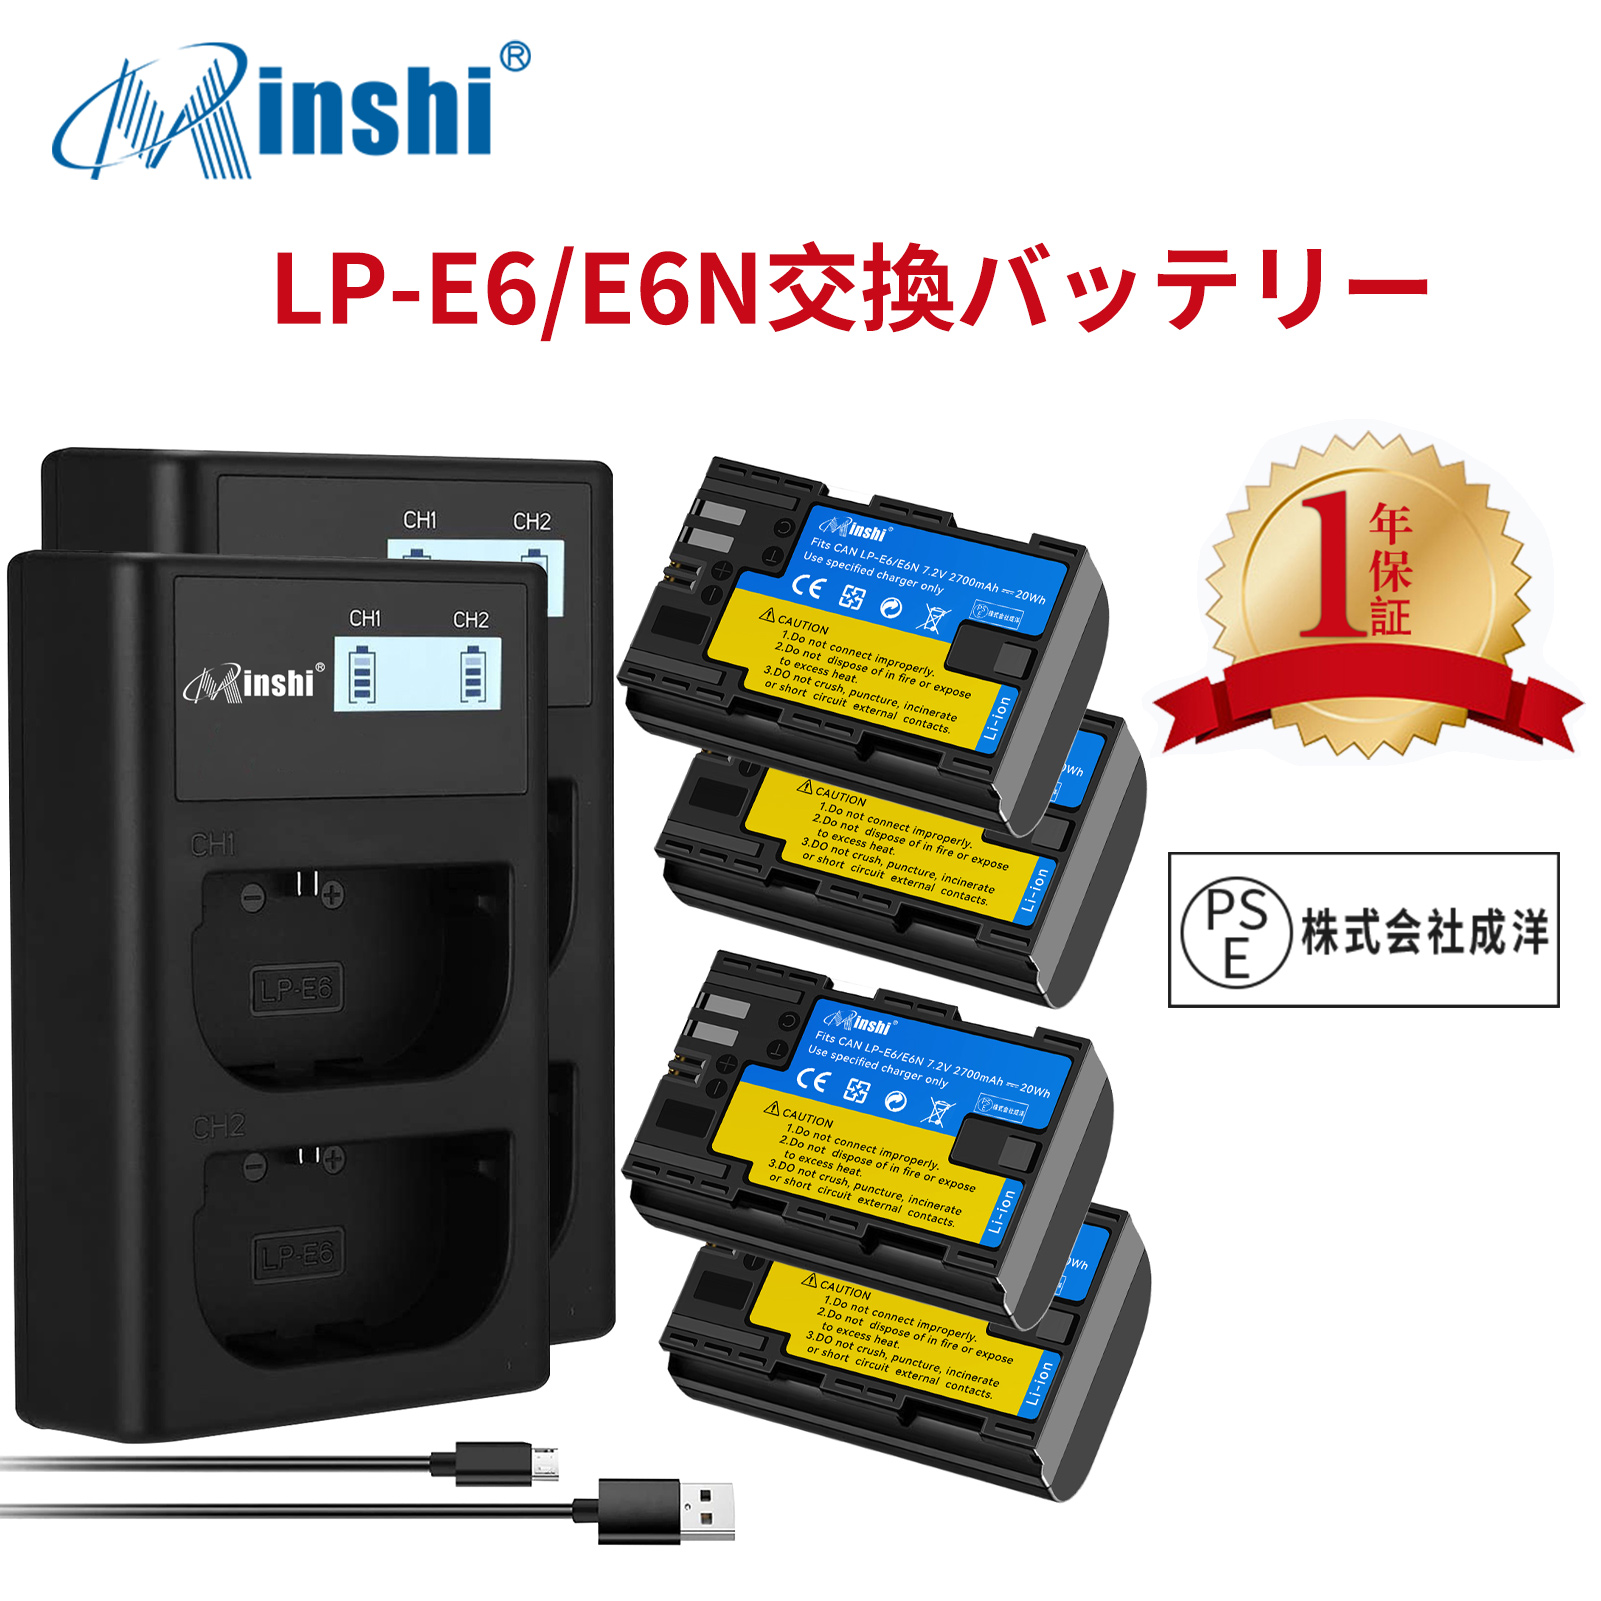 【4個セット&2個充電器】minshi Canon EOS 60D LP-E6 【2700mAh 7.2V 】PSE認定済 高品質 LP-E6NH 交換用バッテリー